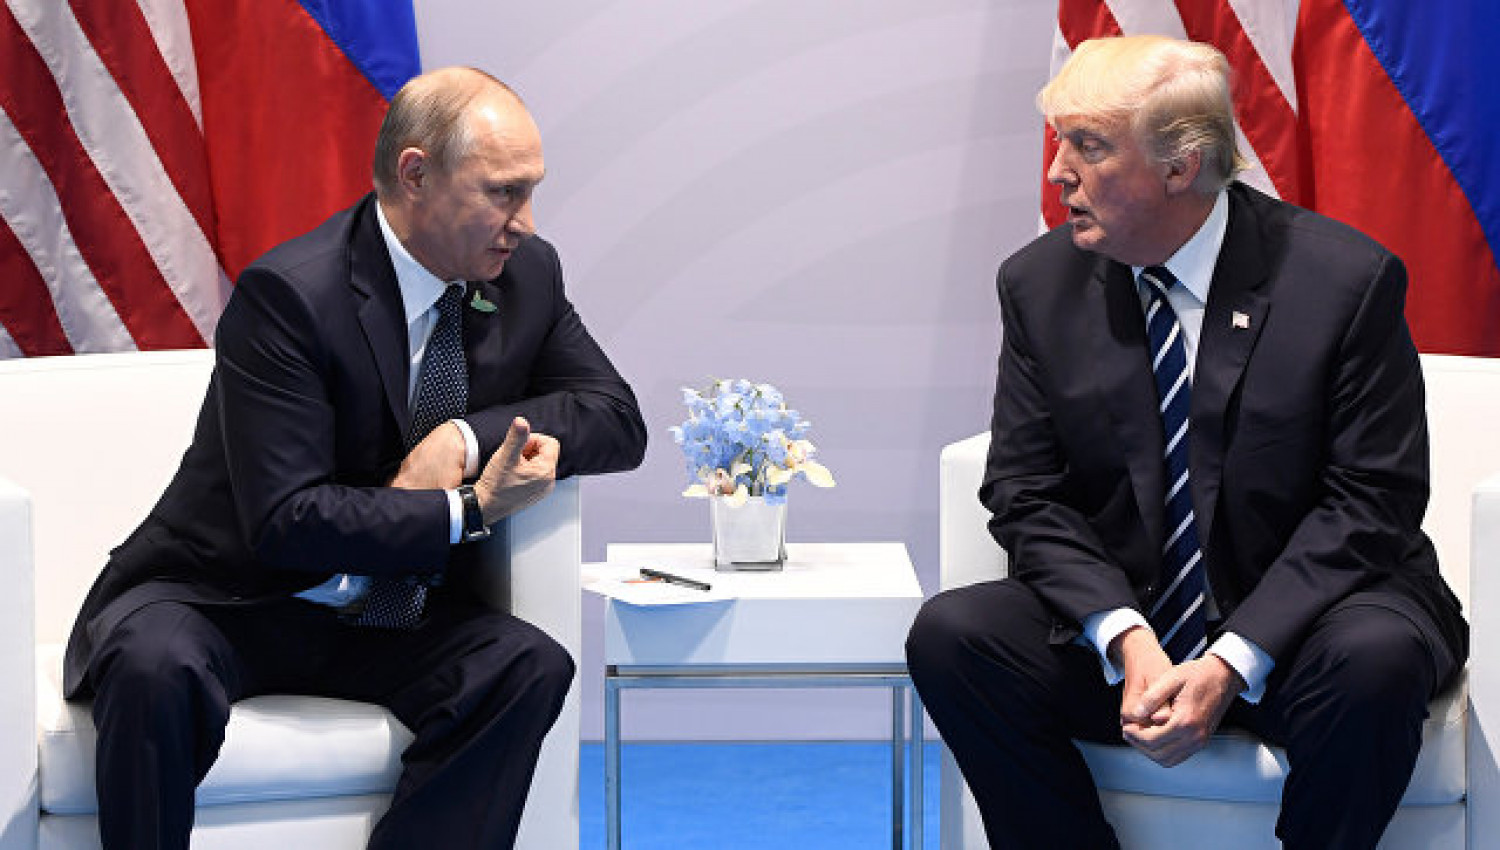 الرئيسان الأميركي دونالد ترامب والروسي فلاديمير بوتين في أول لقاء سابق بينهما